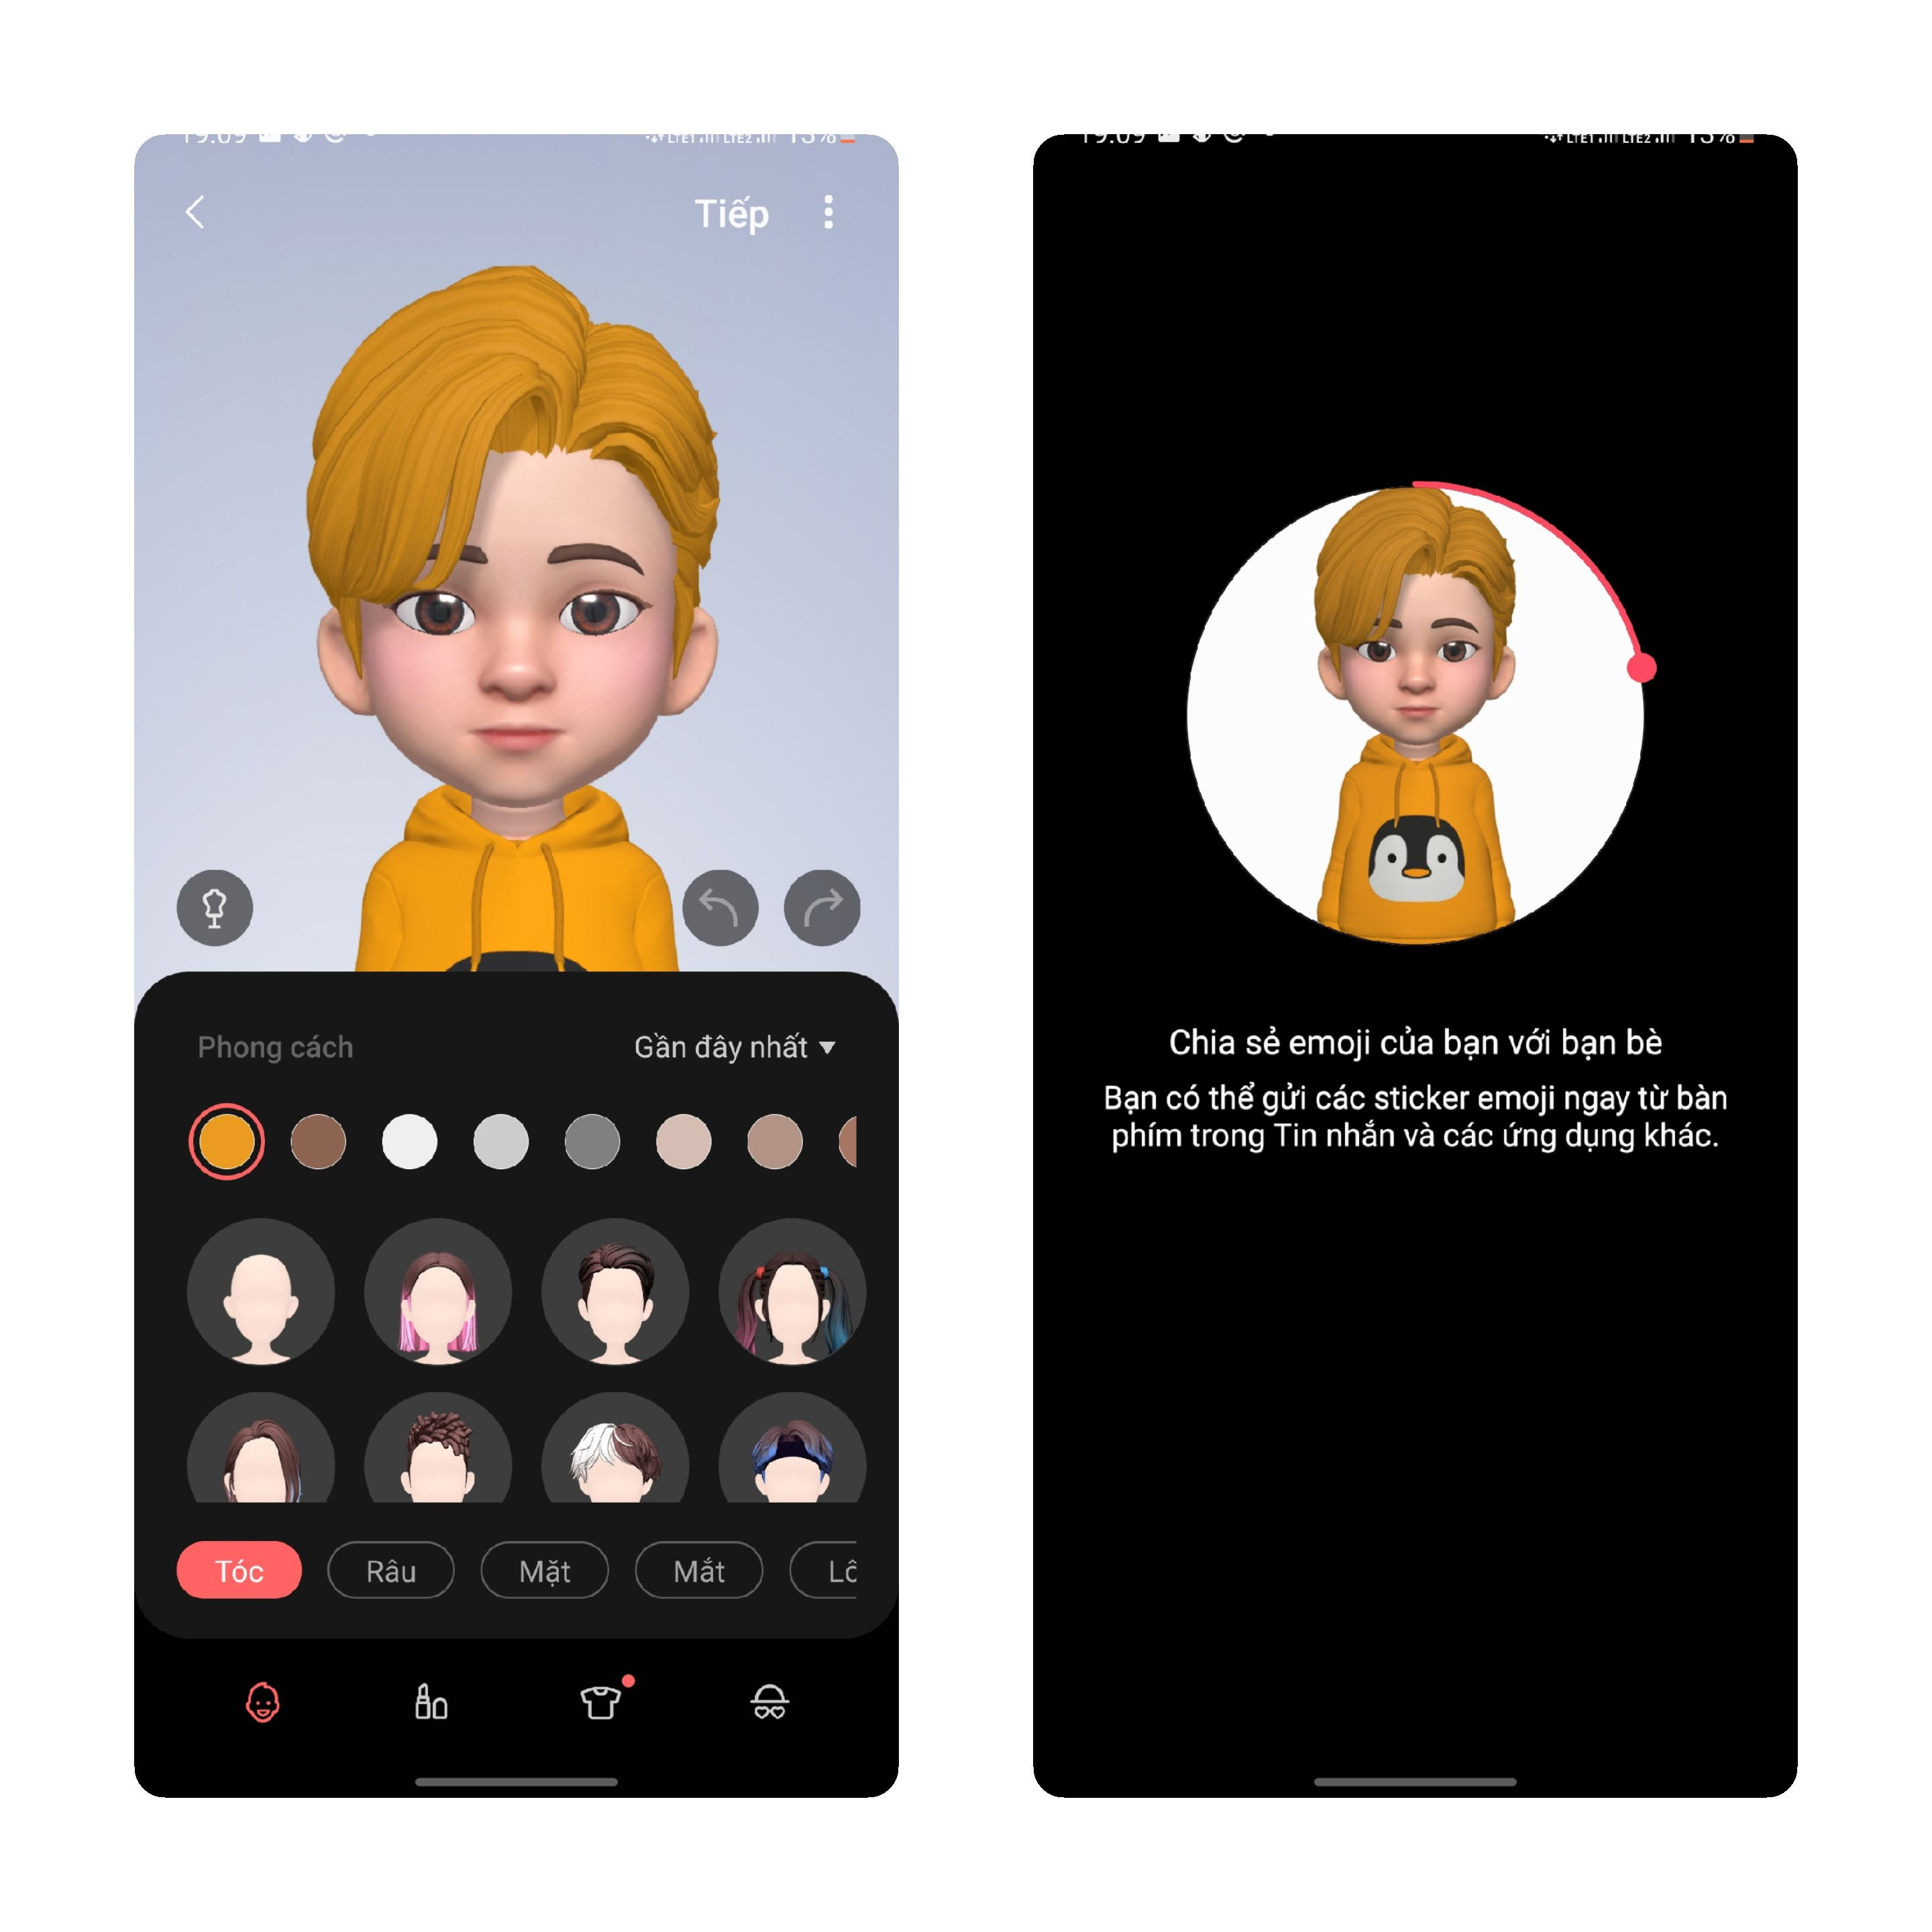 Hướng dẫn tạo nền cuộc gọi bằng AR Emoji - 1619354350